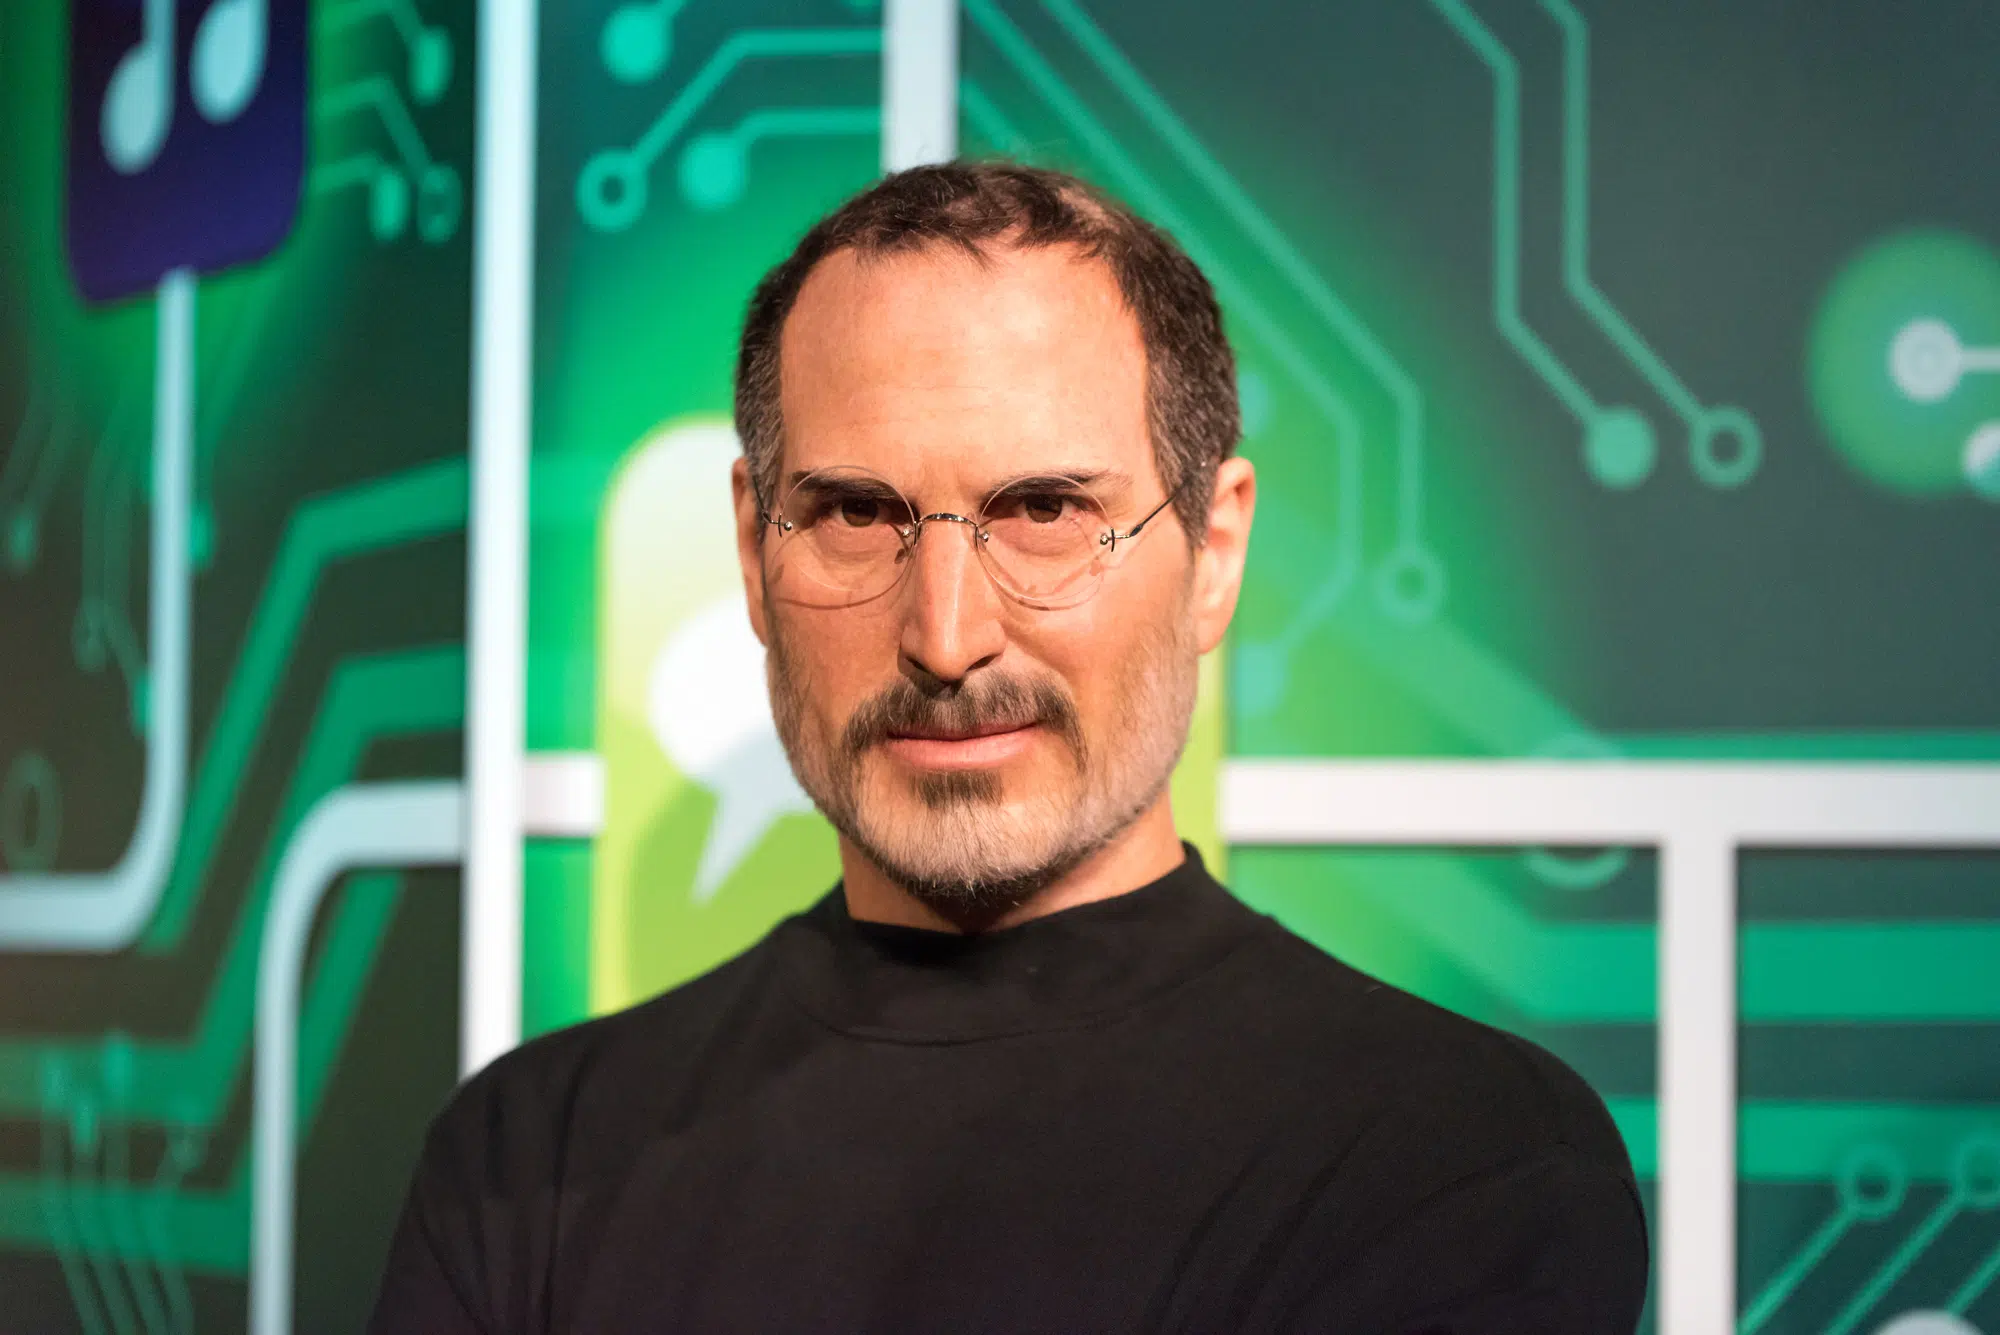 Steve Jobs, wax figure, Turkey